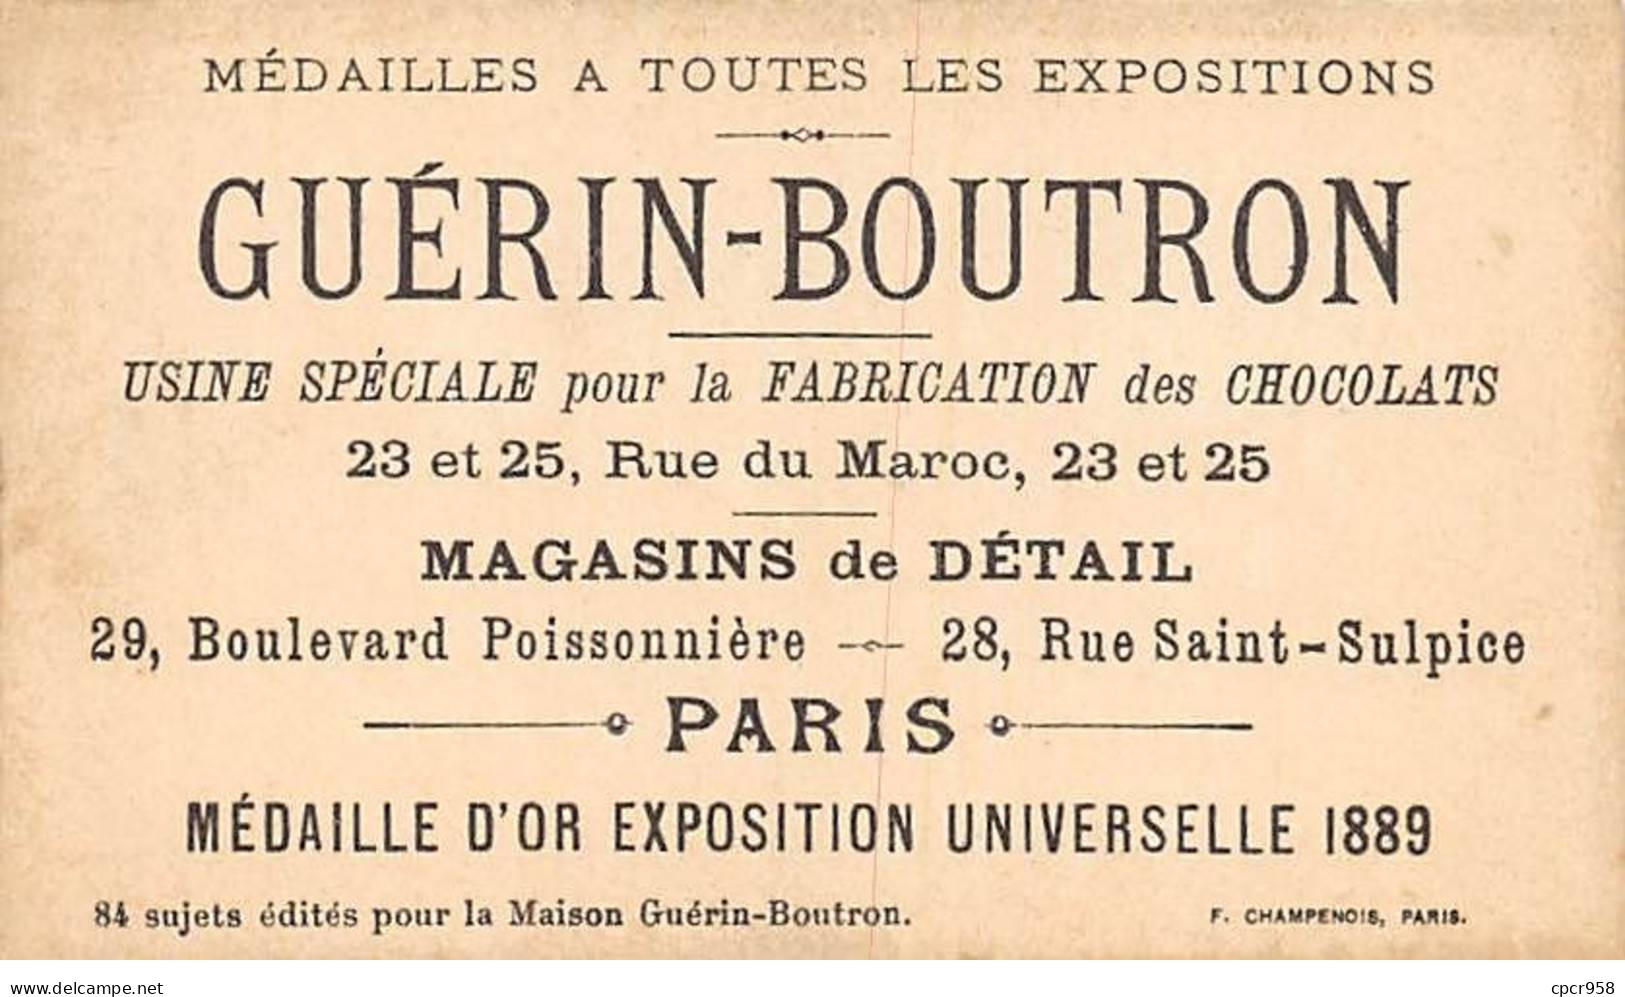 Chromos -COR10568 - Chocolat Guérin-Boutron- Chasses Et Pêches-Lion- Affût- Atlas - Chasseur - 6x10 Cm Env. - Guerin Boutron